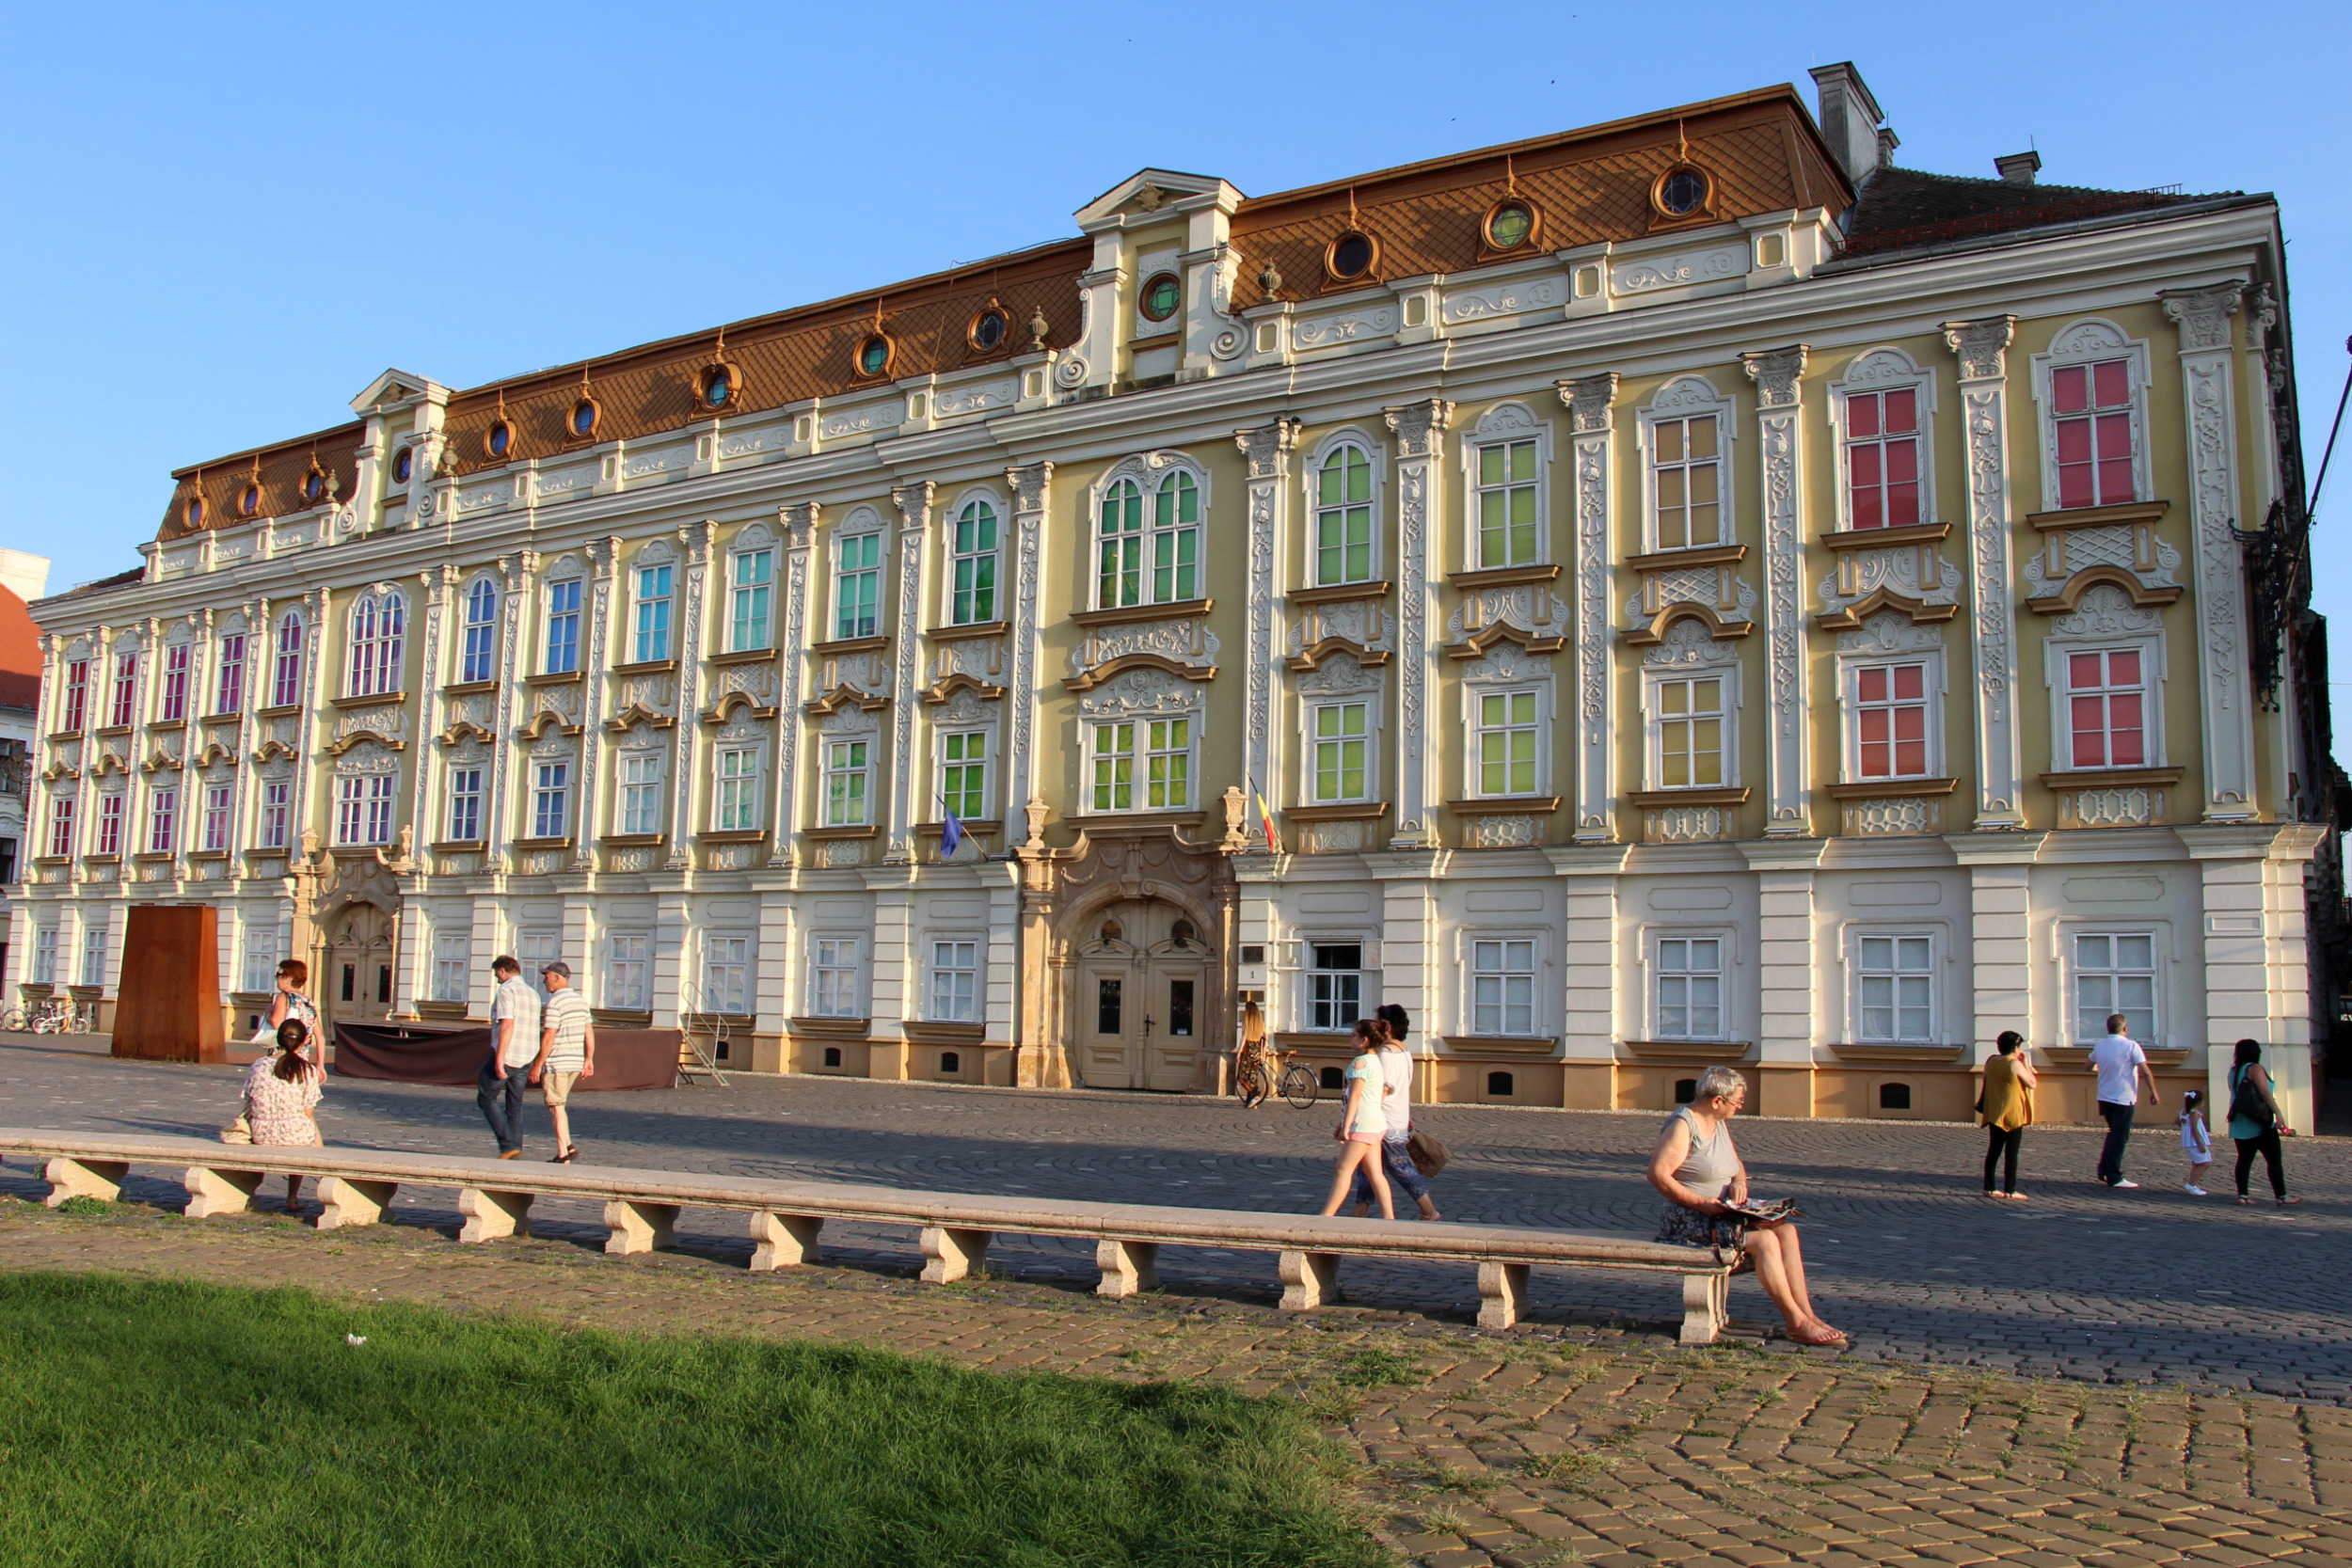 Der Palatul Baroc gehört zu den bekanntesten Sehenswürdigkeiten in Timișoara